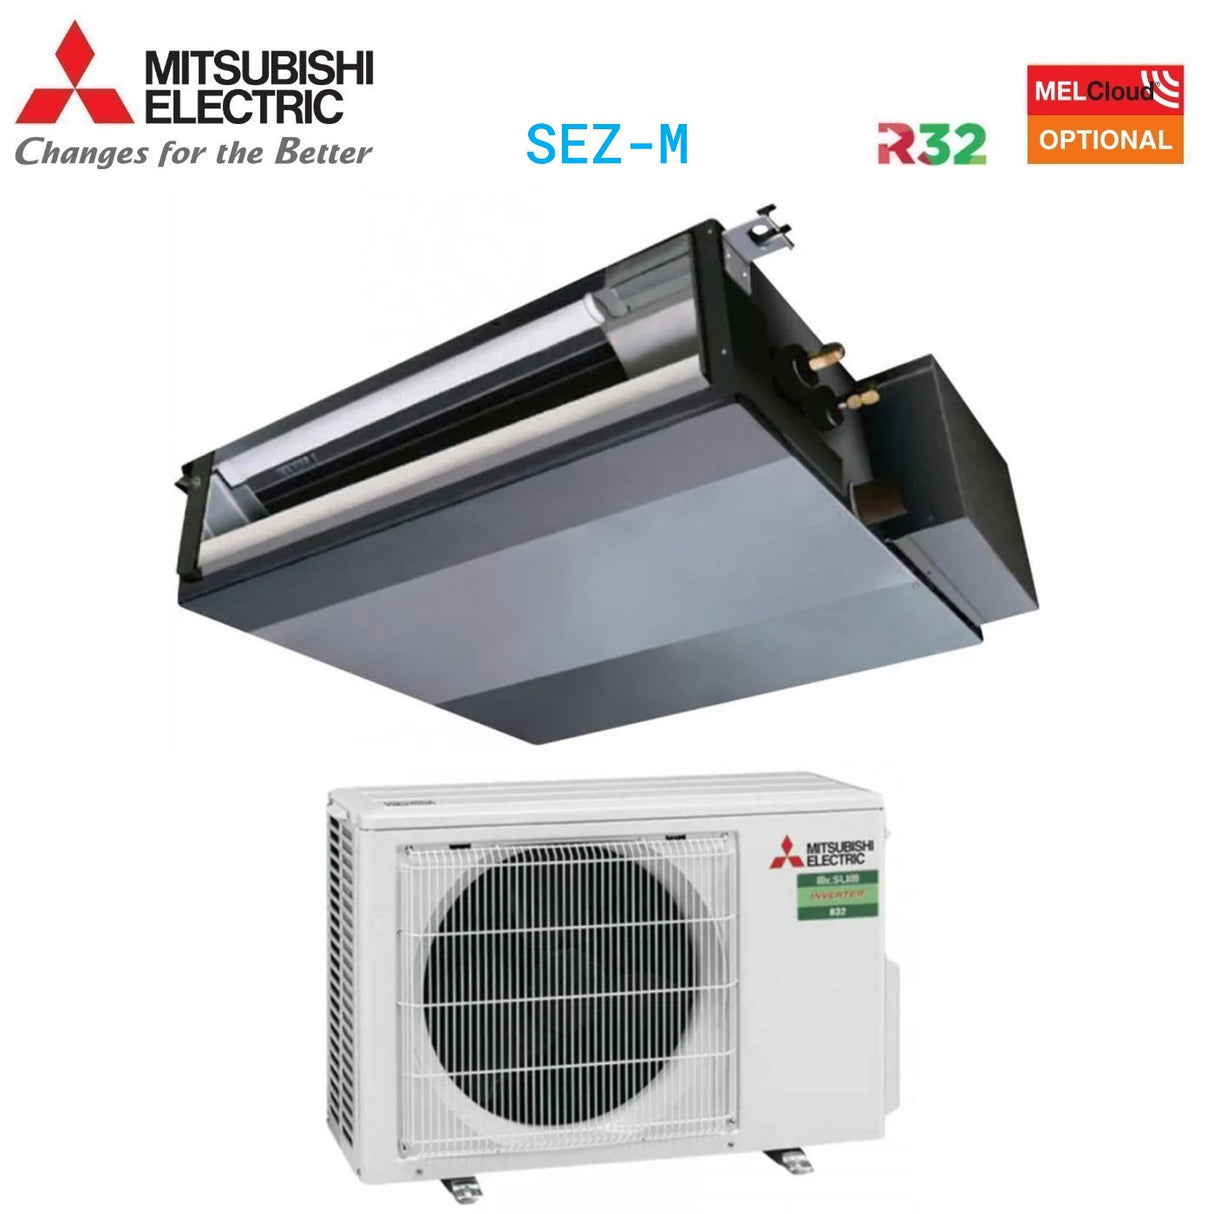 immagine-1-mitsubishi-electric-climatizzatore-condizionatore-mitsubishi-electric-canalizzato-canalizzabile-inverter-12000-btu-sez-m35da-suz-m35va-r-32-wi-fi-optional